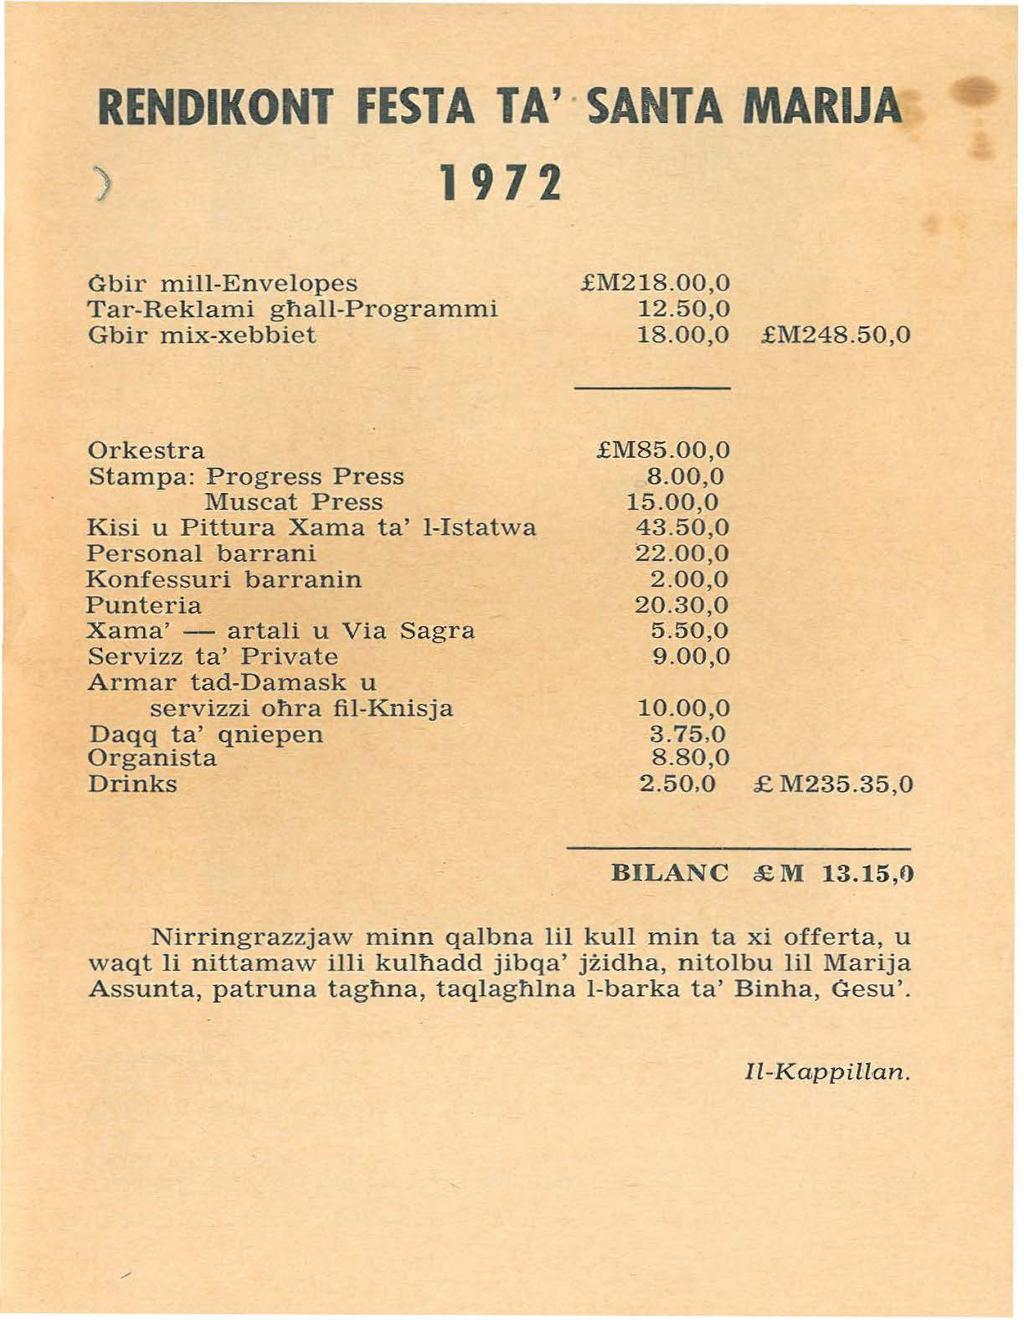 RENDIKONT FESTA TA' SANTA MARIJA ) 1972 Ġbir mill-envelopes Tar-Reklami għall-programmi Gbir mix-xebbiet.fm218.00,0 12.50,0 18.00,0.fM248.